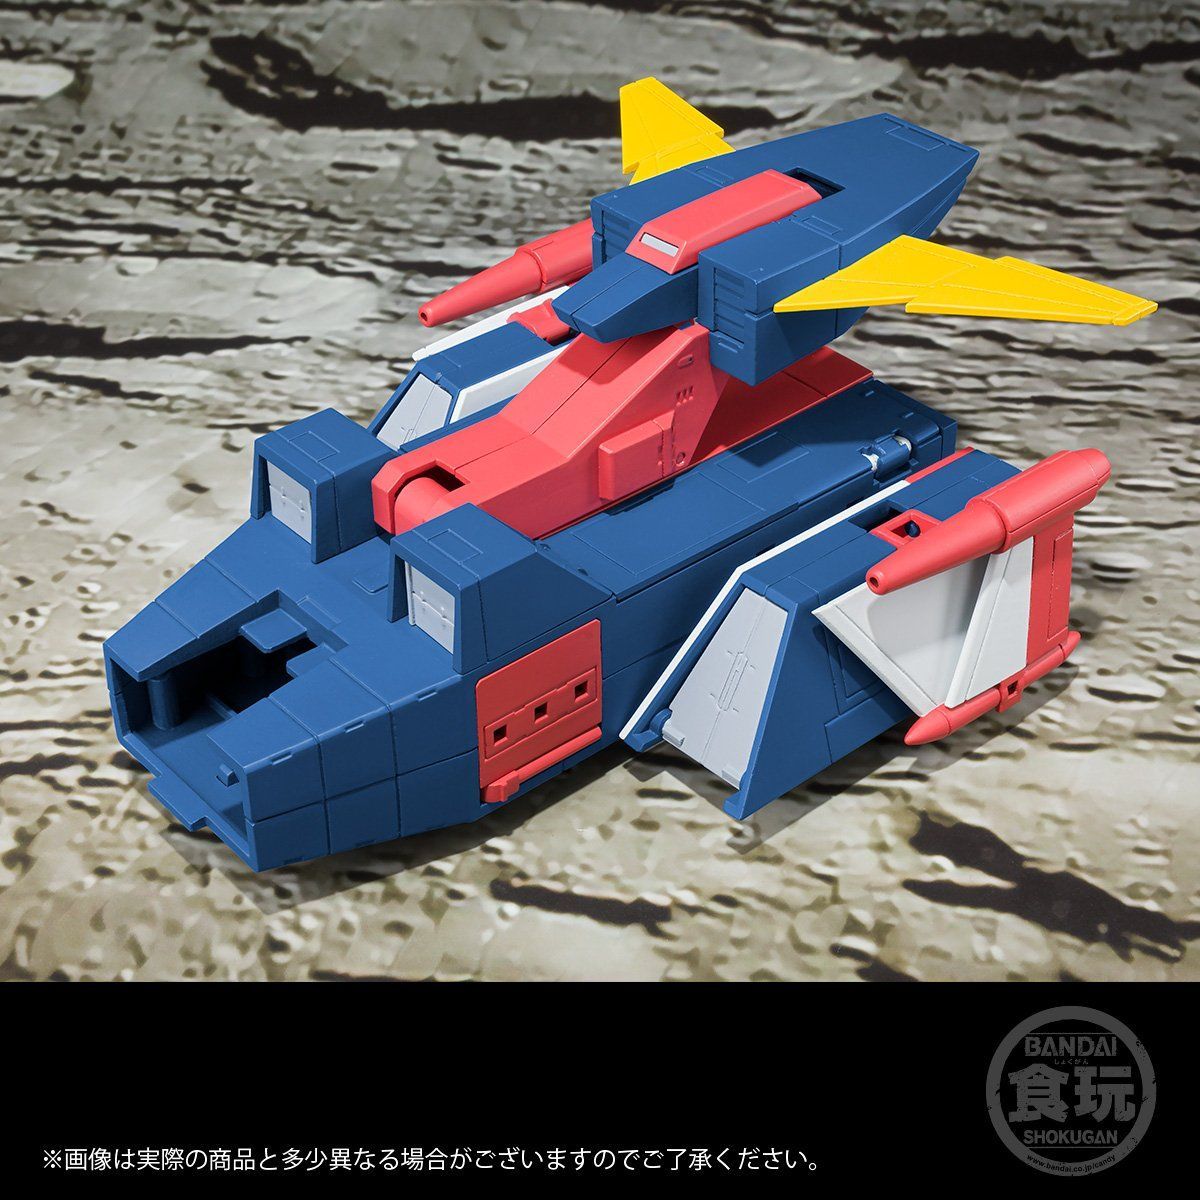 【食玩】スーパーミニプラ『無敵ロボ トライダーG7』3個入りBOX-019